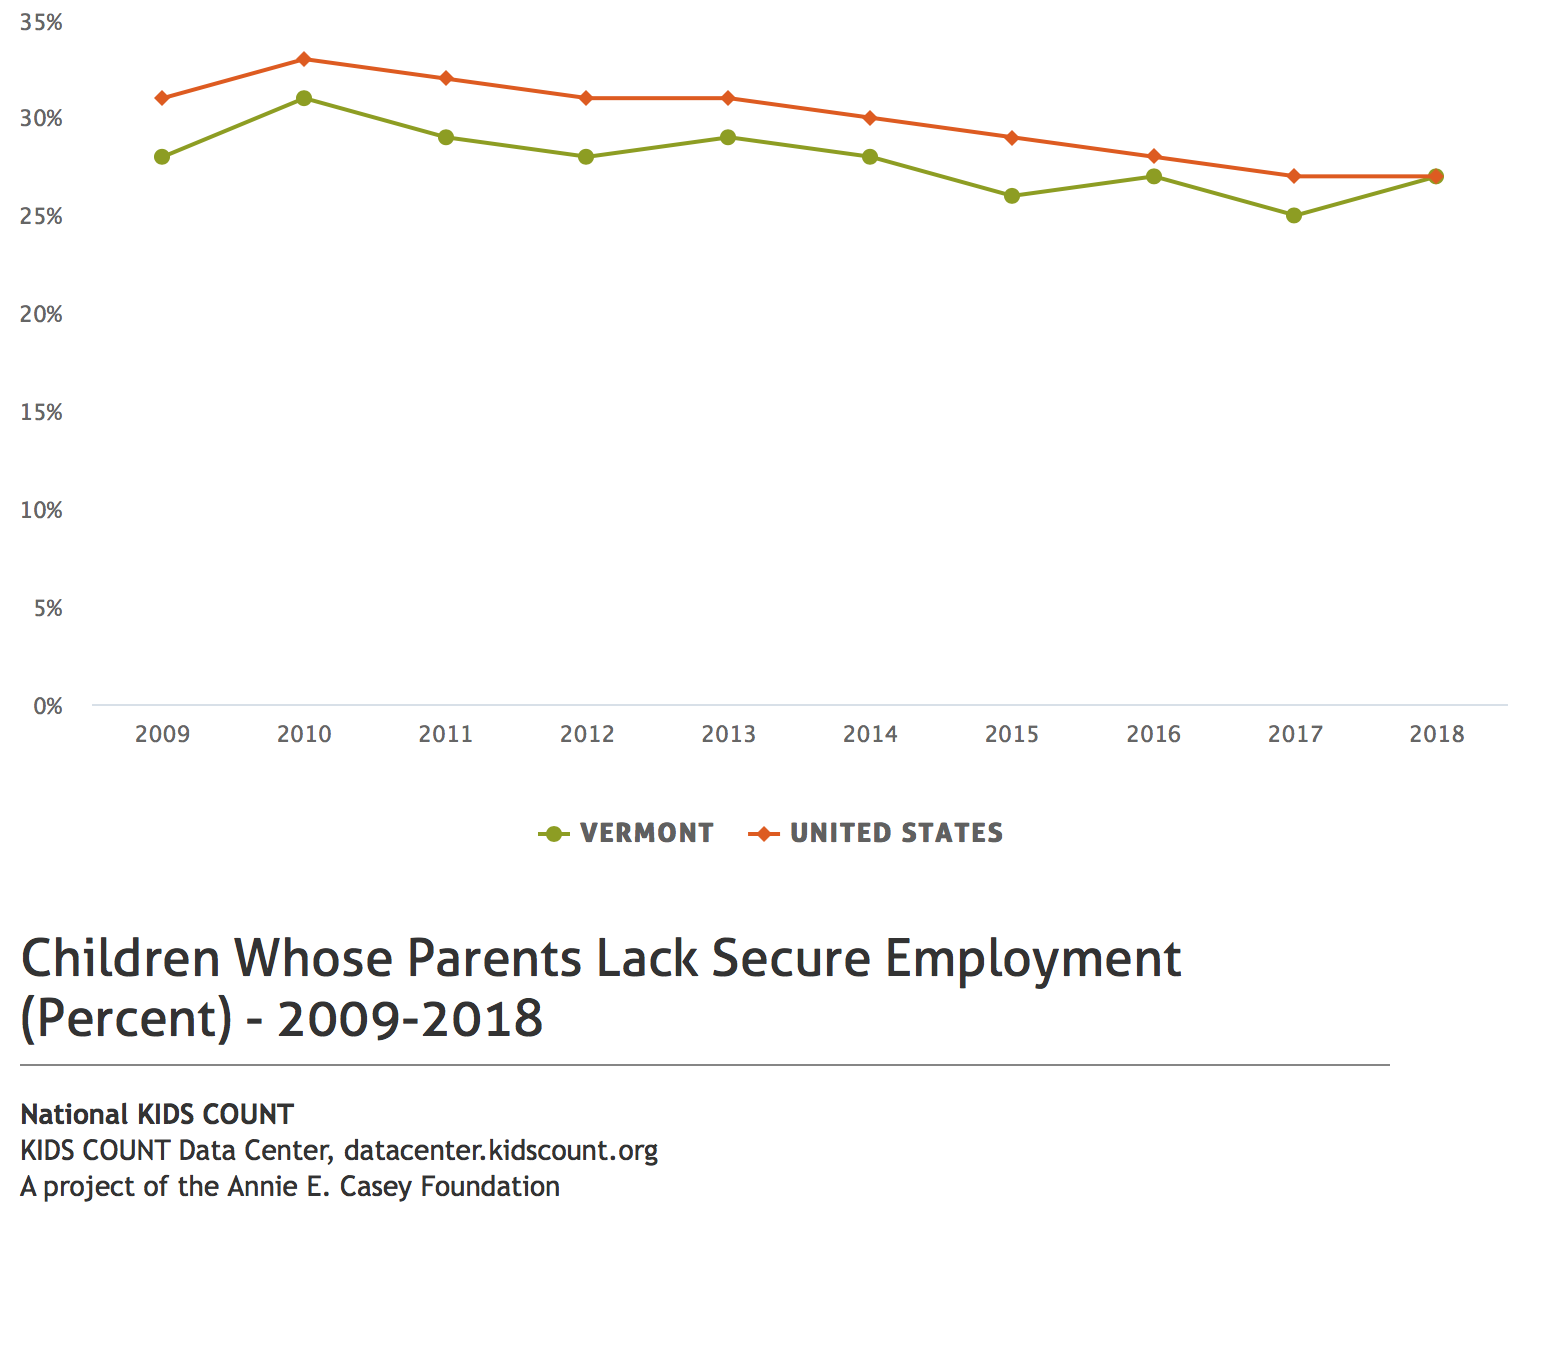 Children whose parents lack secure employment